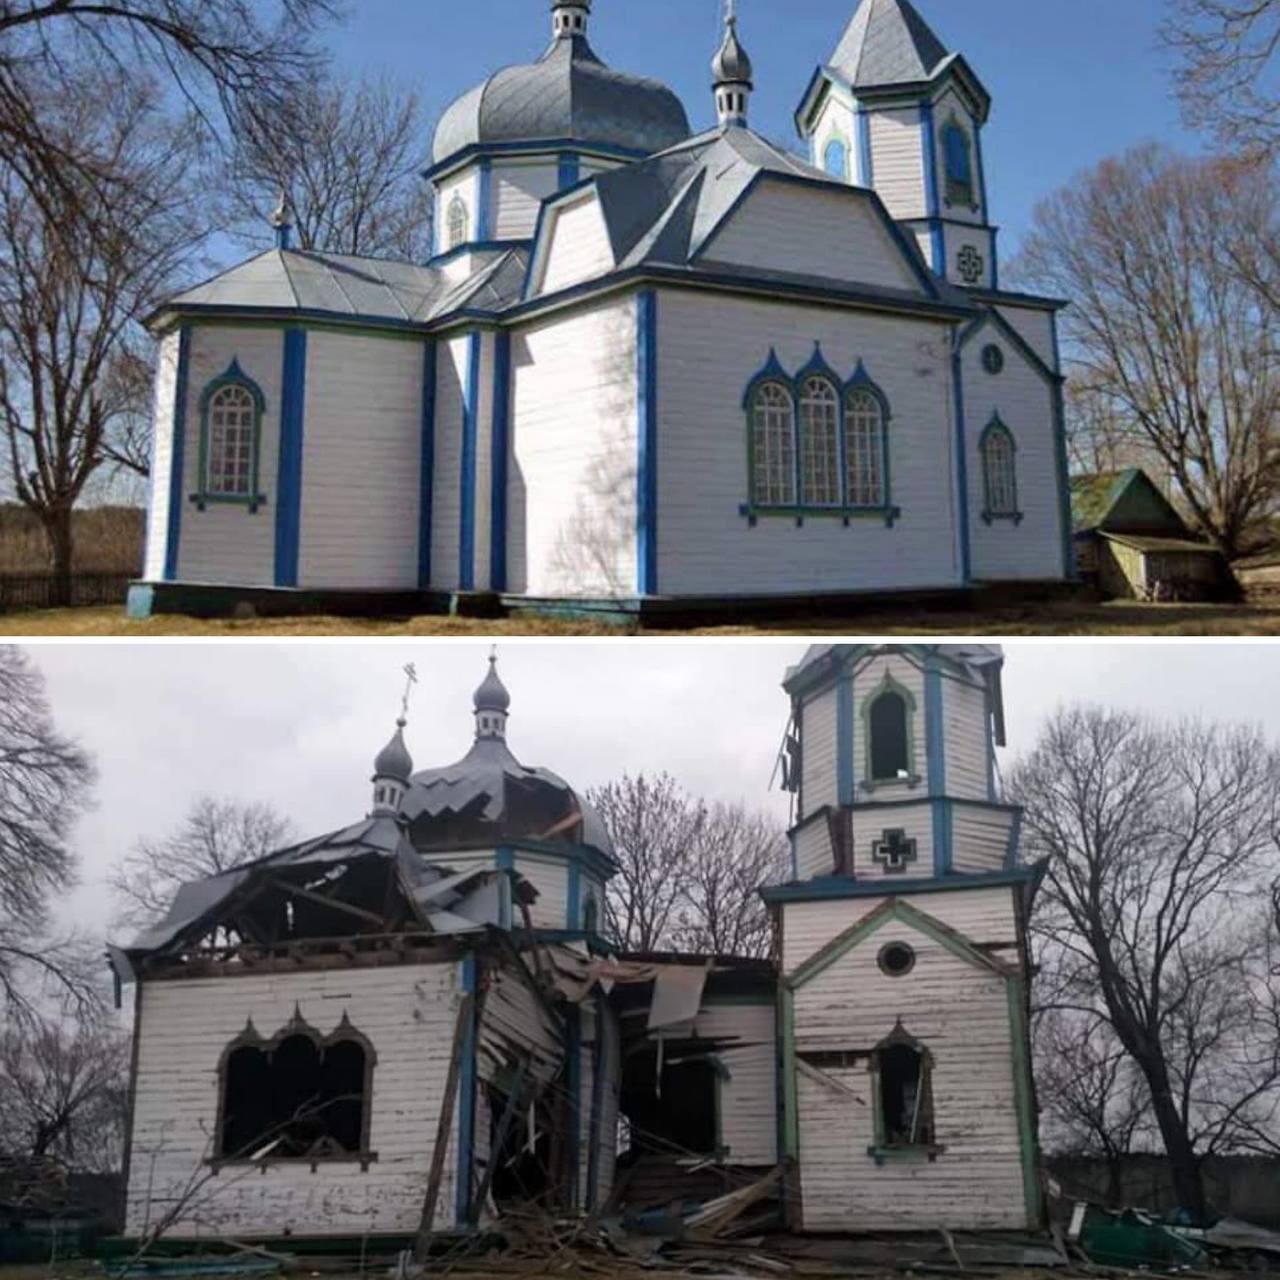 Zbudowana w 1862 r. cerkiew Narodzenia Najświętszej Marii Panny we wsi Wiazywka koło Żytomierza przed i po bombardowaniu 7 marca 2022 r. Fot. z komunikatora Telegram